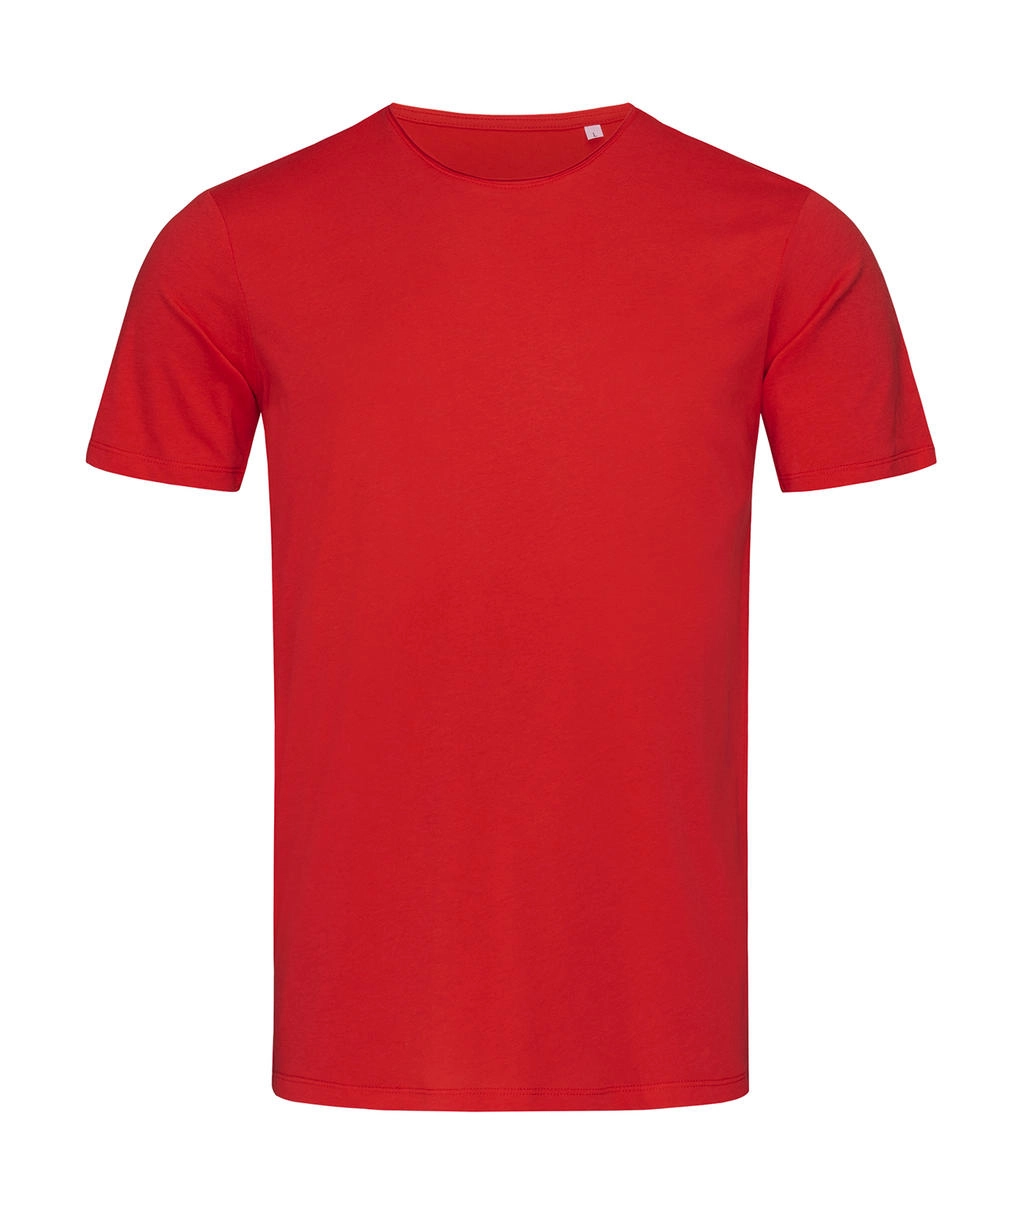 Finest Cotton-T Men zum Besticken und Bedrucken in der Farbe Crimson Red mit Ihren Logo, Schriftzug oder Motiv.